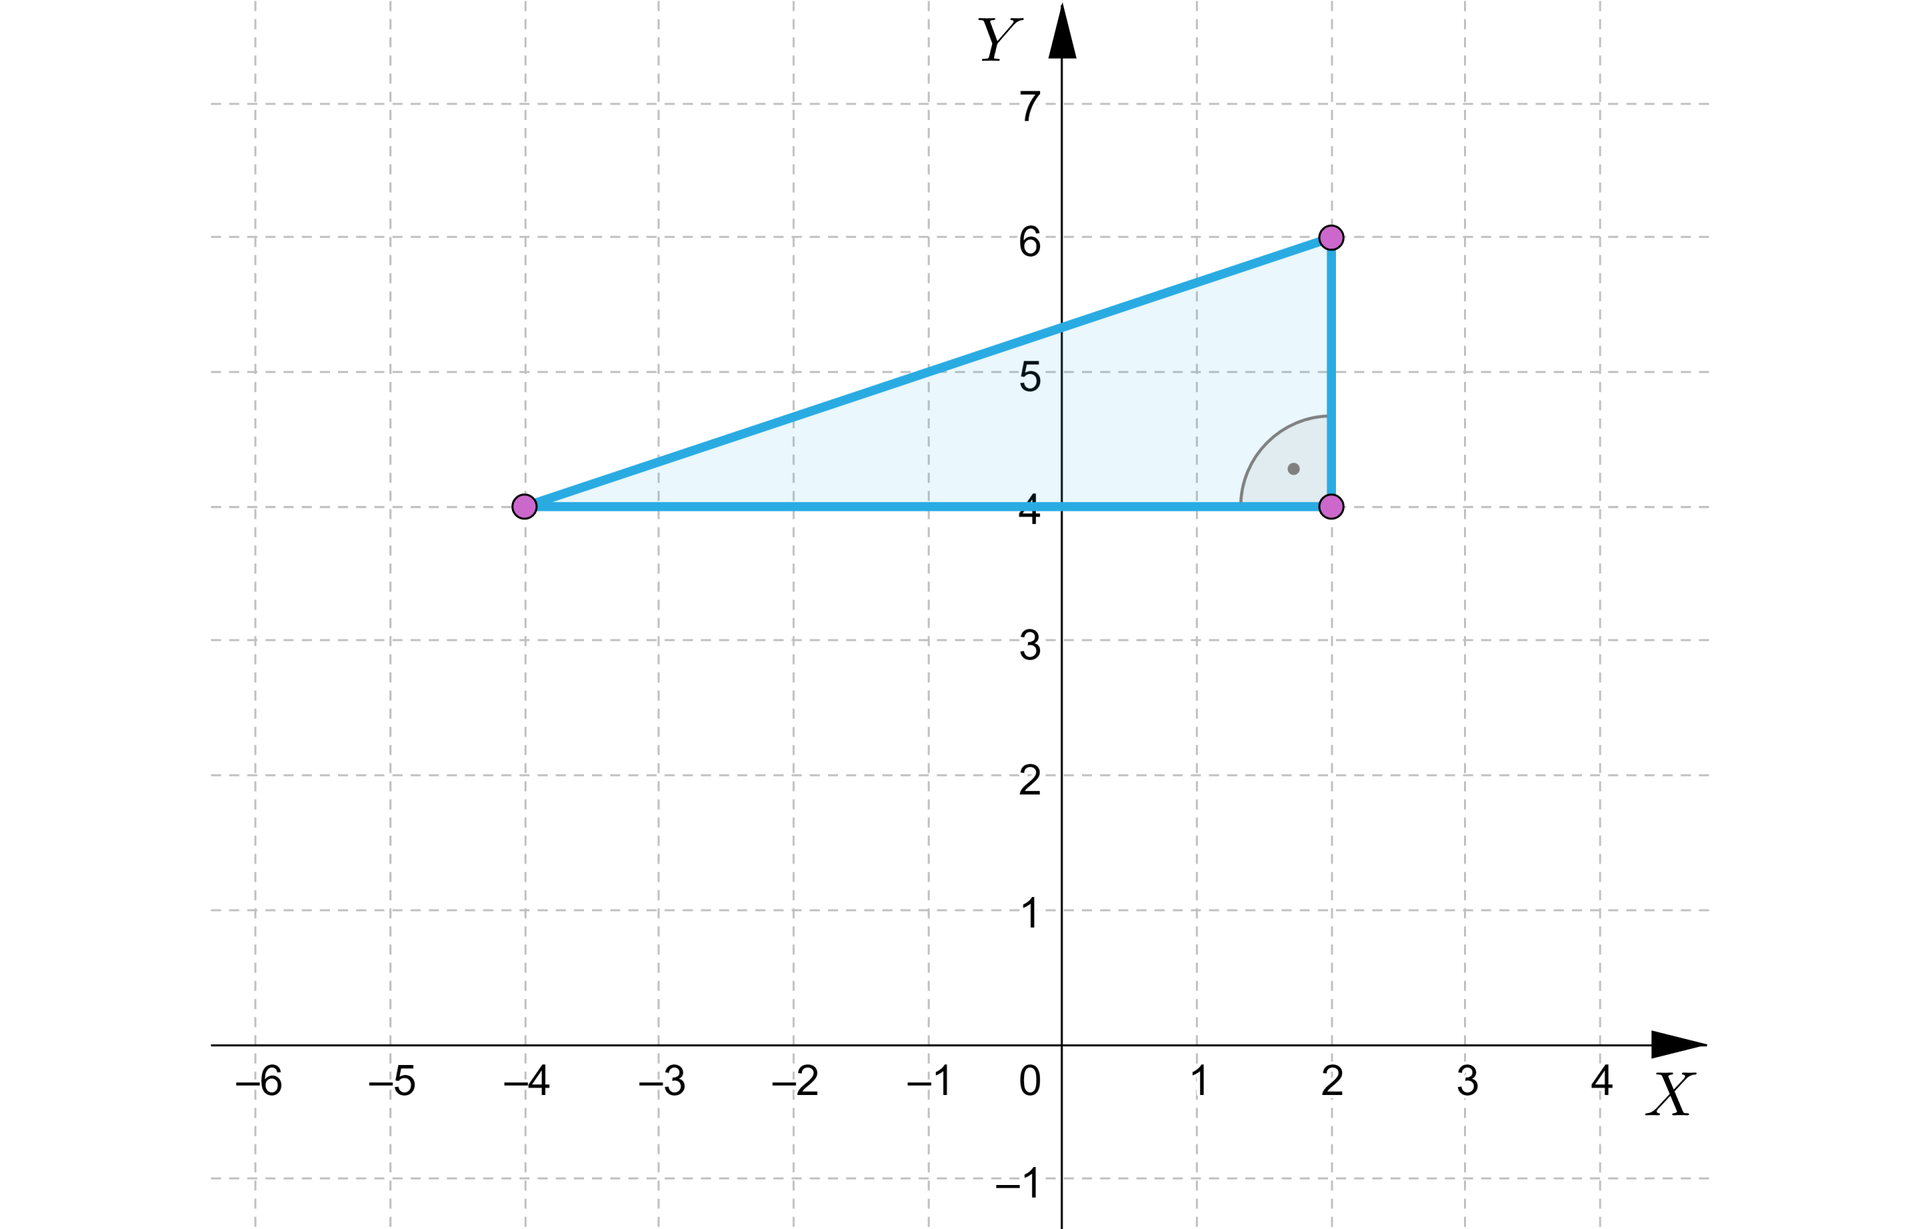 Grafika przedstawia układ współrzędnych z poziomą osią x od minus sześciu do czterech i pionową osią y od minus jeden do siedmiu. Na płaszczyźnie znajduje się trójkąt prostokątny. Wierzchołki trójkąta są zaznaczone zamalowanymi kropkami o współrzędnych kolejno: początek nawiasu, minus 4, 4, zamknięcie nawiasu, początek nawiasu, 2, 4, zamknięcie nawiasu, początek nawiasu, 2, 6, zamknięcie nawiasu. Przy punkcie początek nawiasu, 2, 4, zamknięcie nawiasu zaznaczony został kąt prosty.